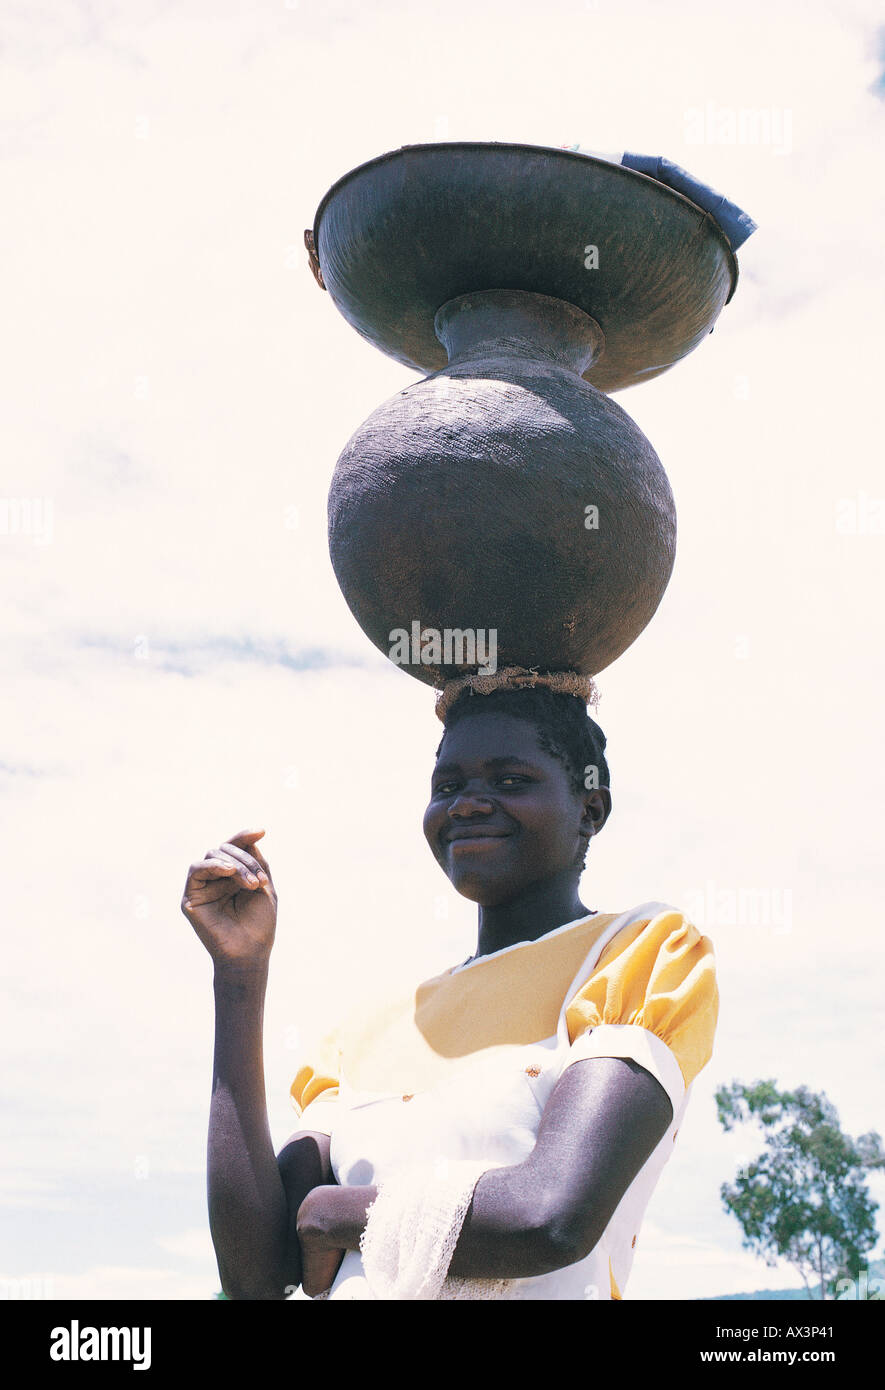 Luo mujer llevando un plato metálico y una olla de barro sobre su cabeza Nyanza del sur en el oeste de Kenia, África Oriental Foto de stock